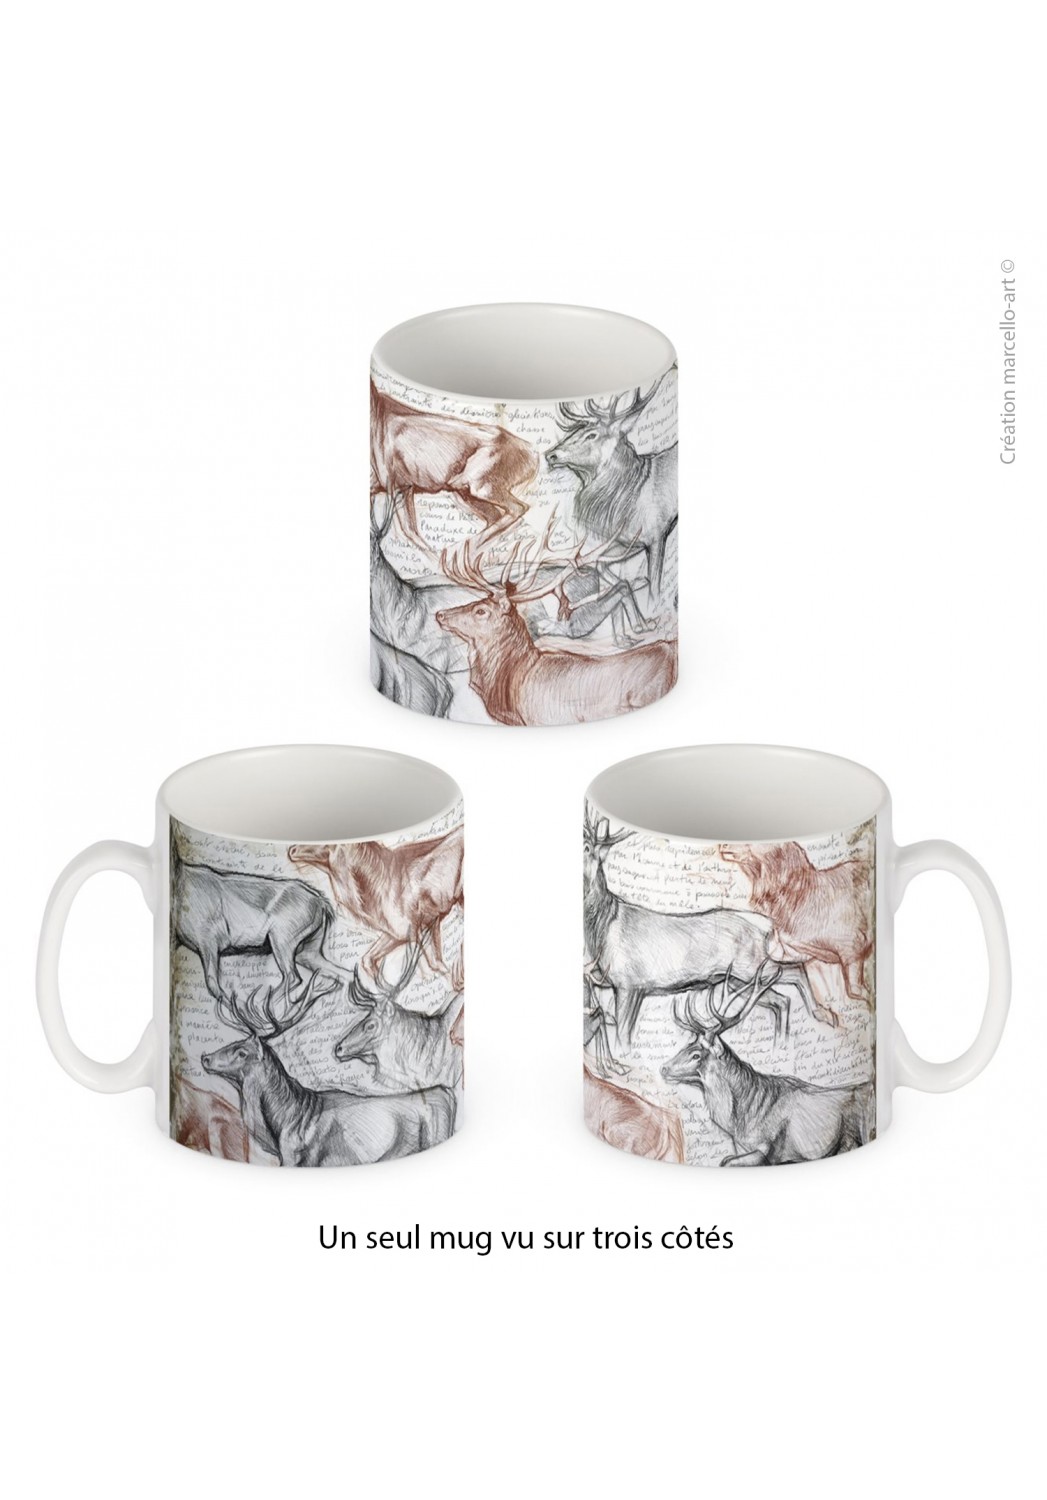 Marcello-art: Decoration accessoiries Porcelain mug 297 The last herd